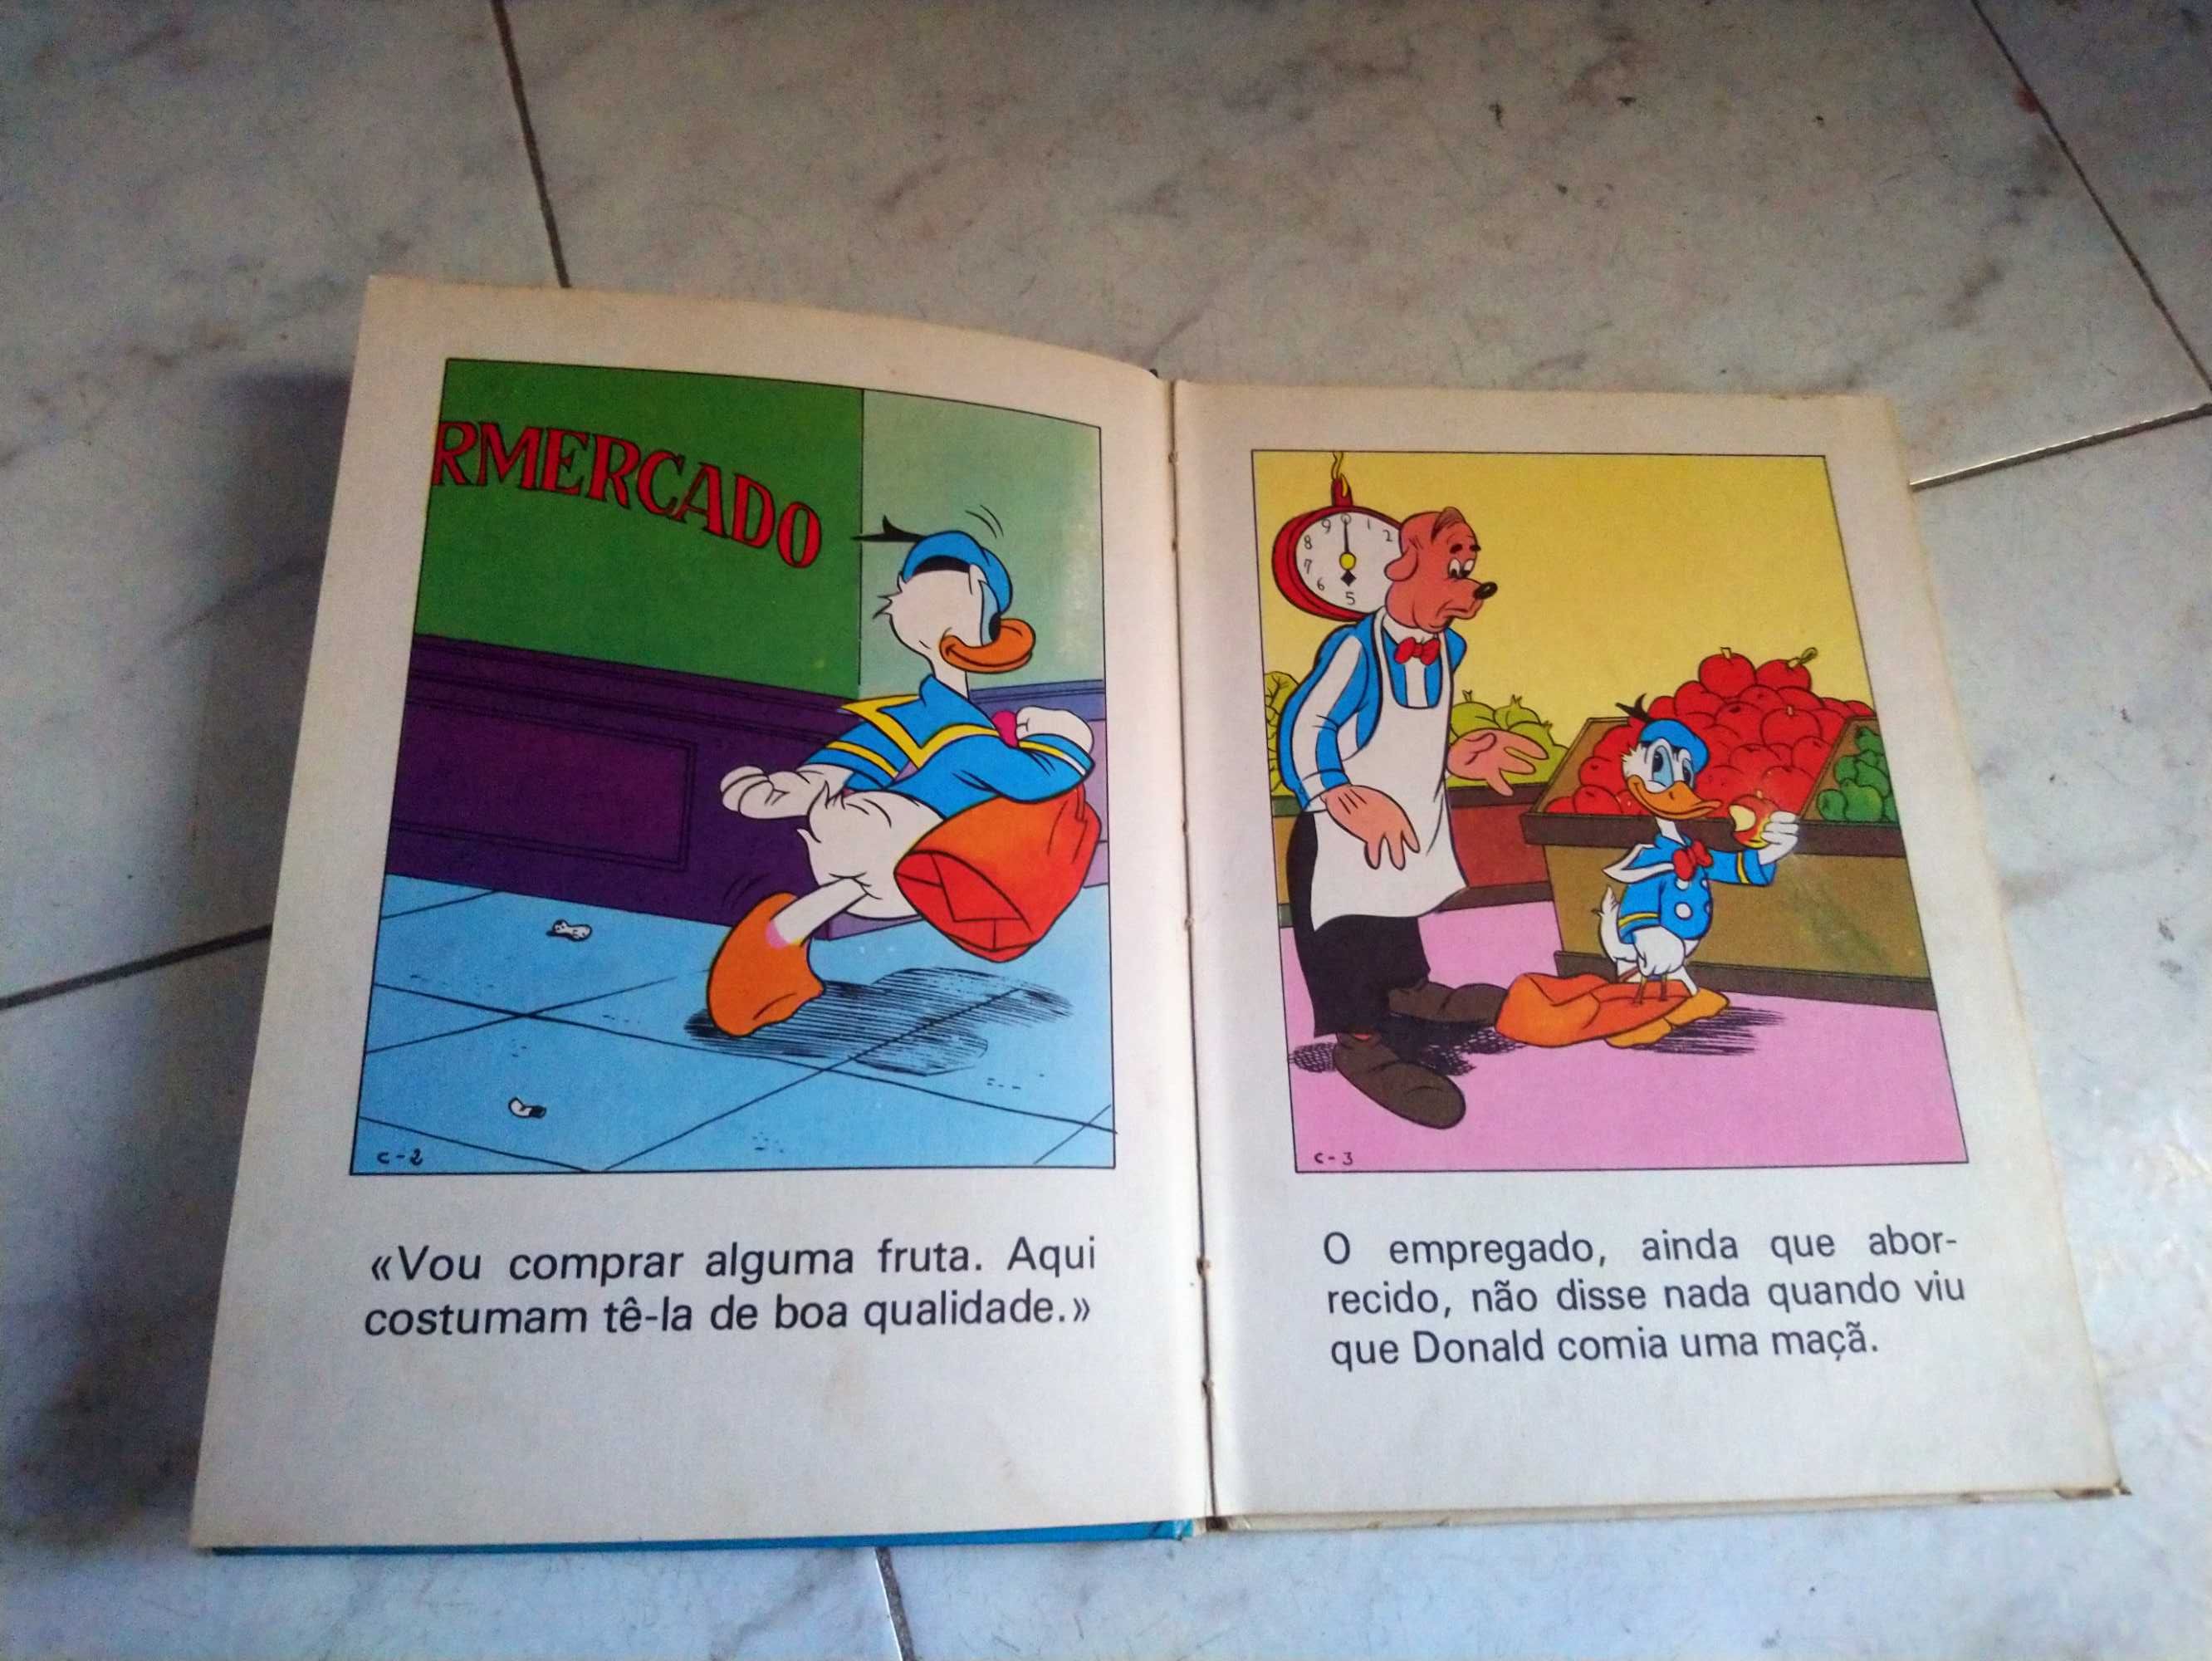 Livro infantil antigo “Donald e os seus amigos”